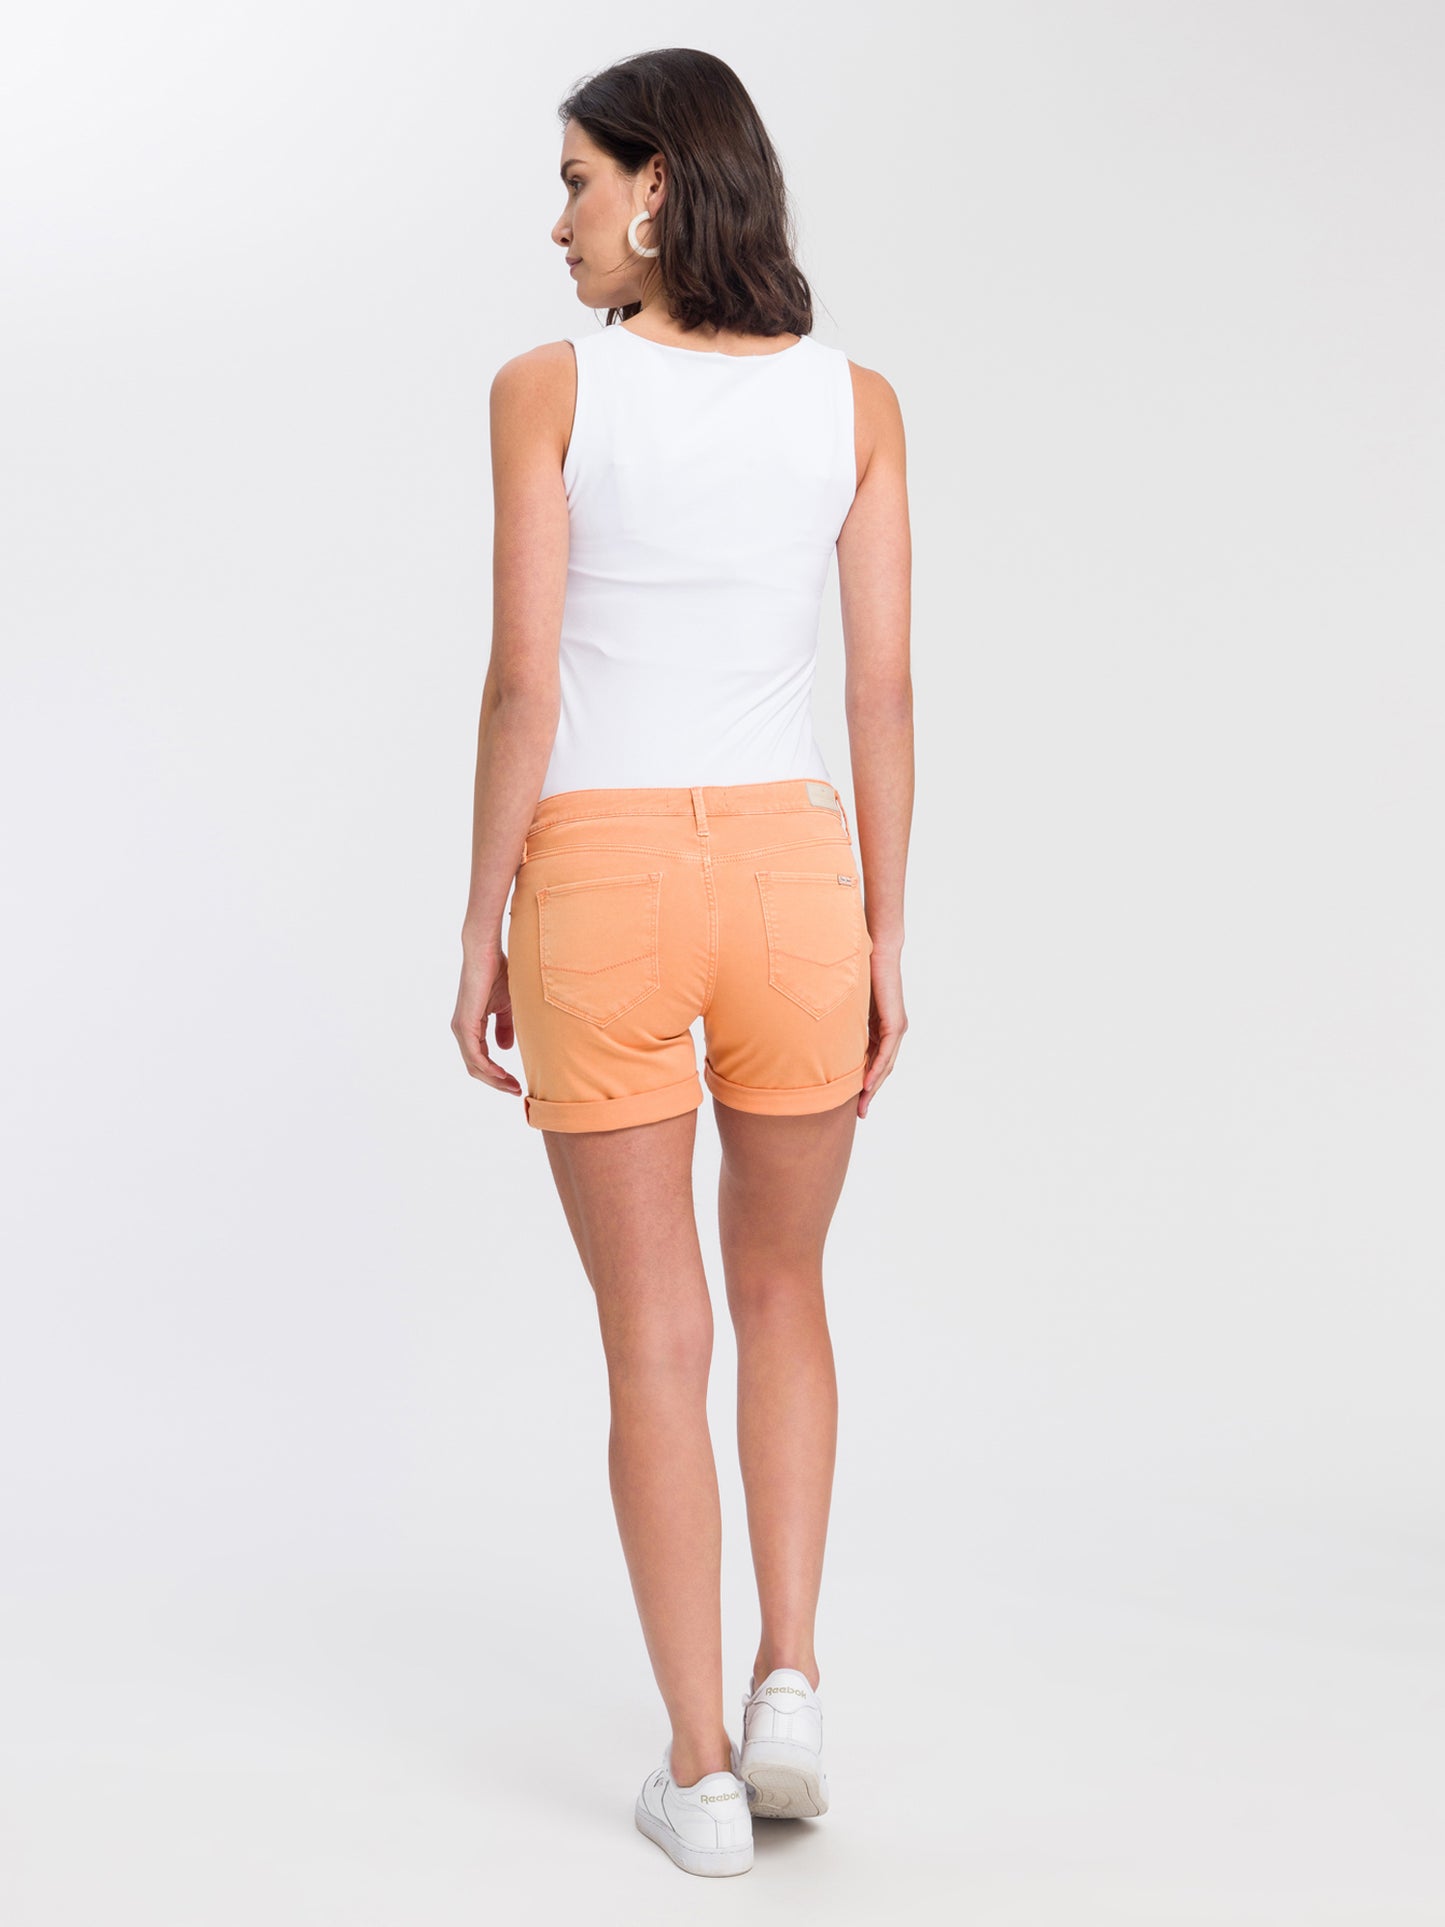 Zena Damen Jeans Slim Shorts orange